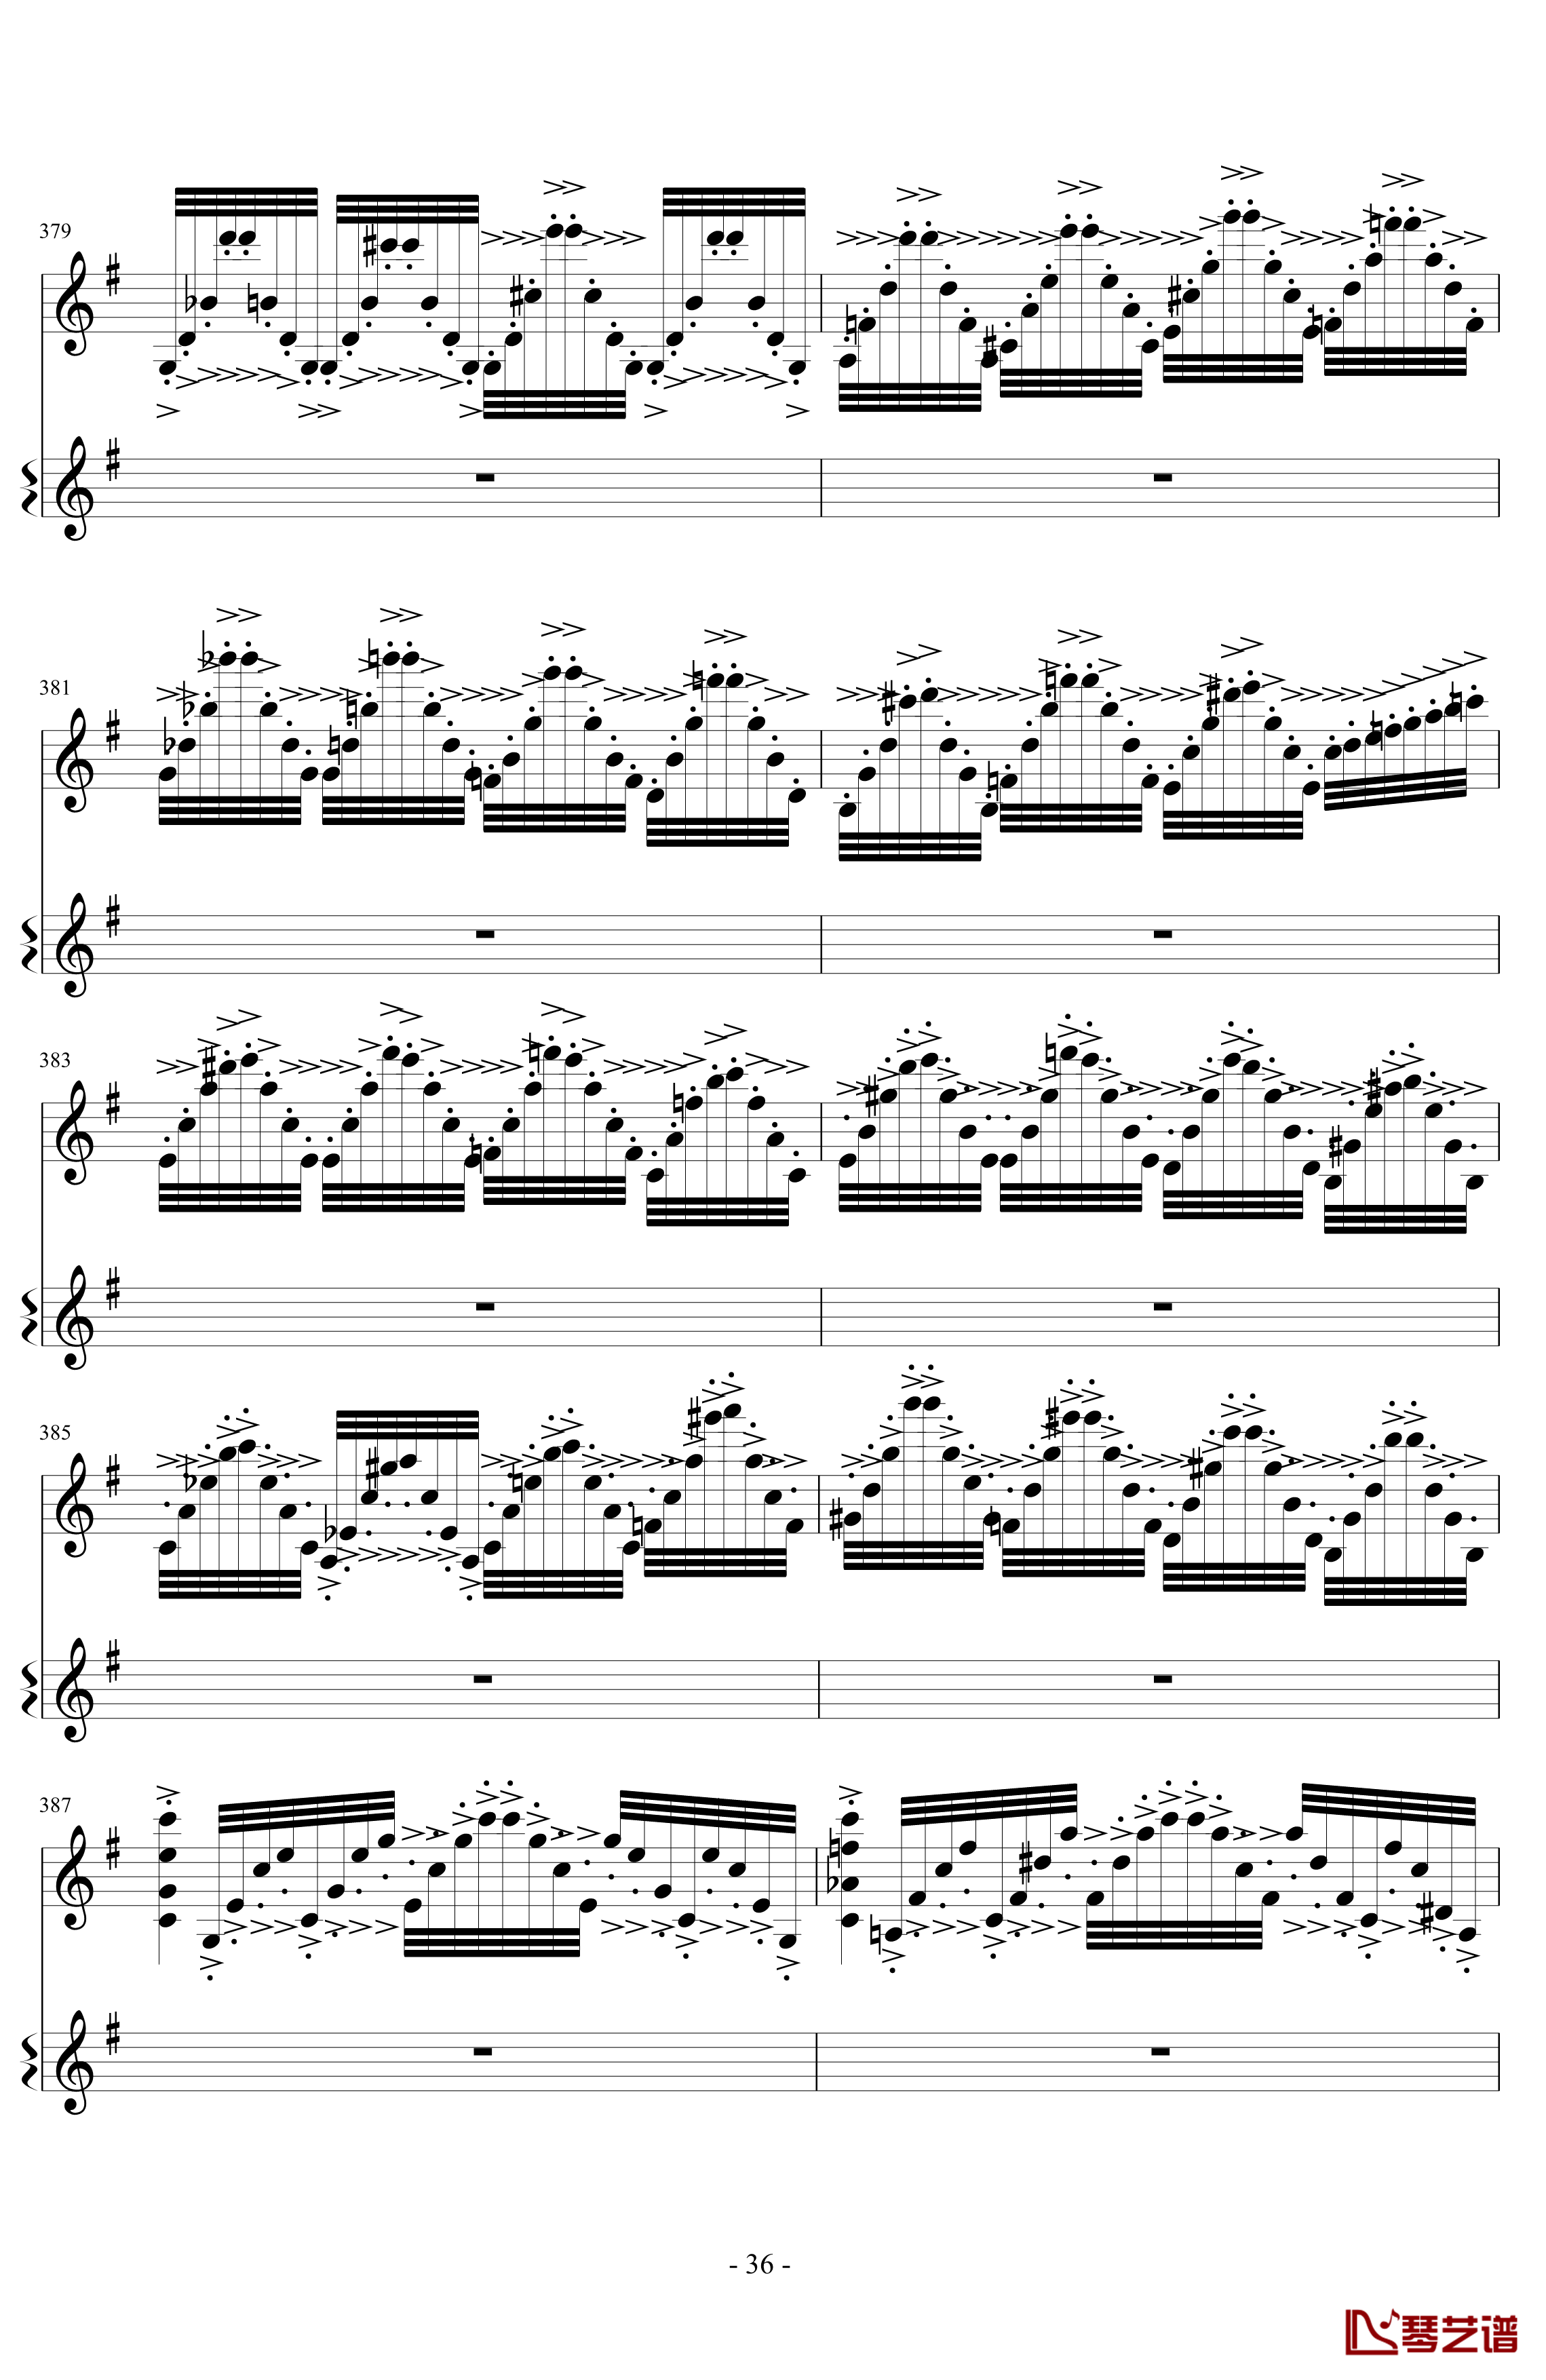 意大利国歌变奏曲钢琴谱-DXF36